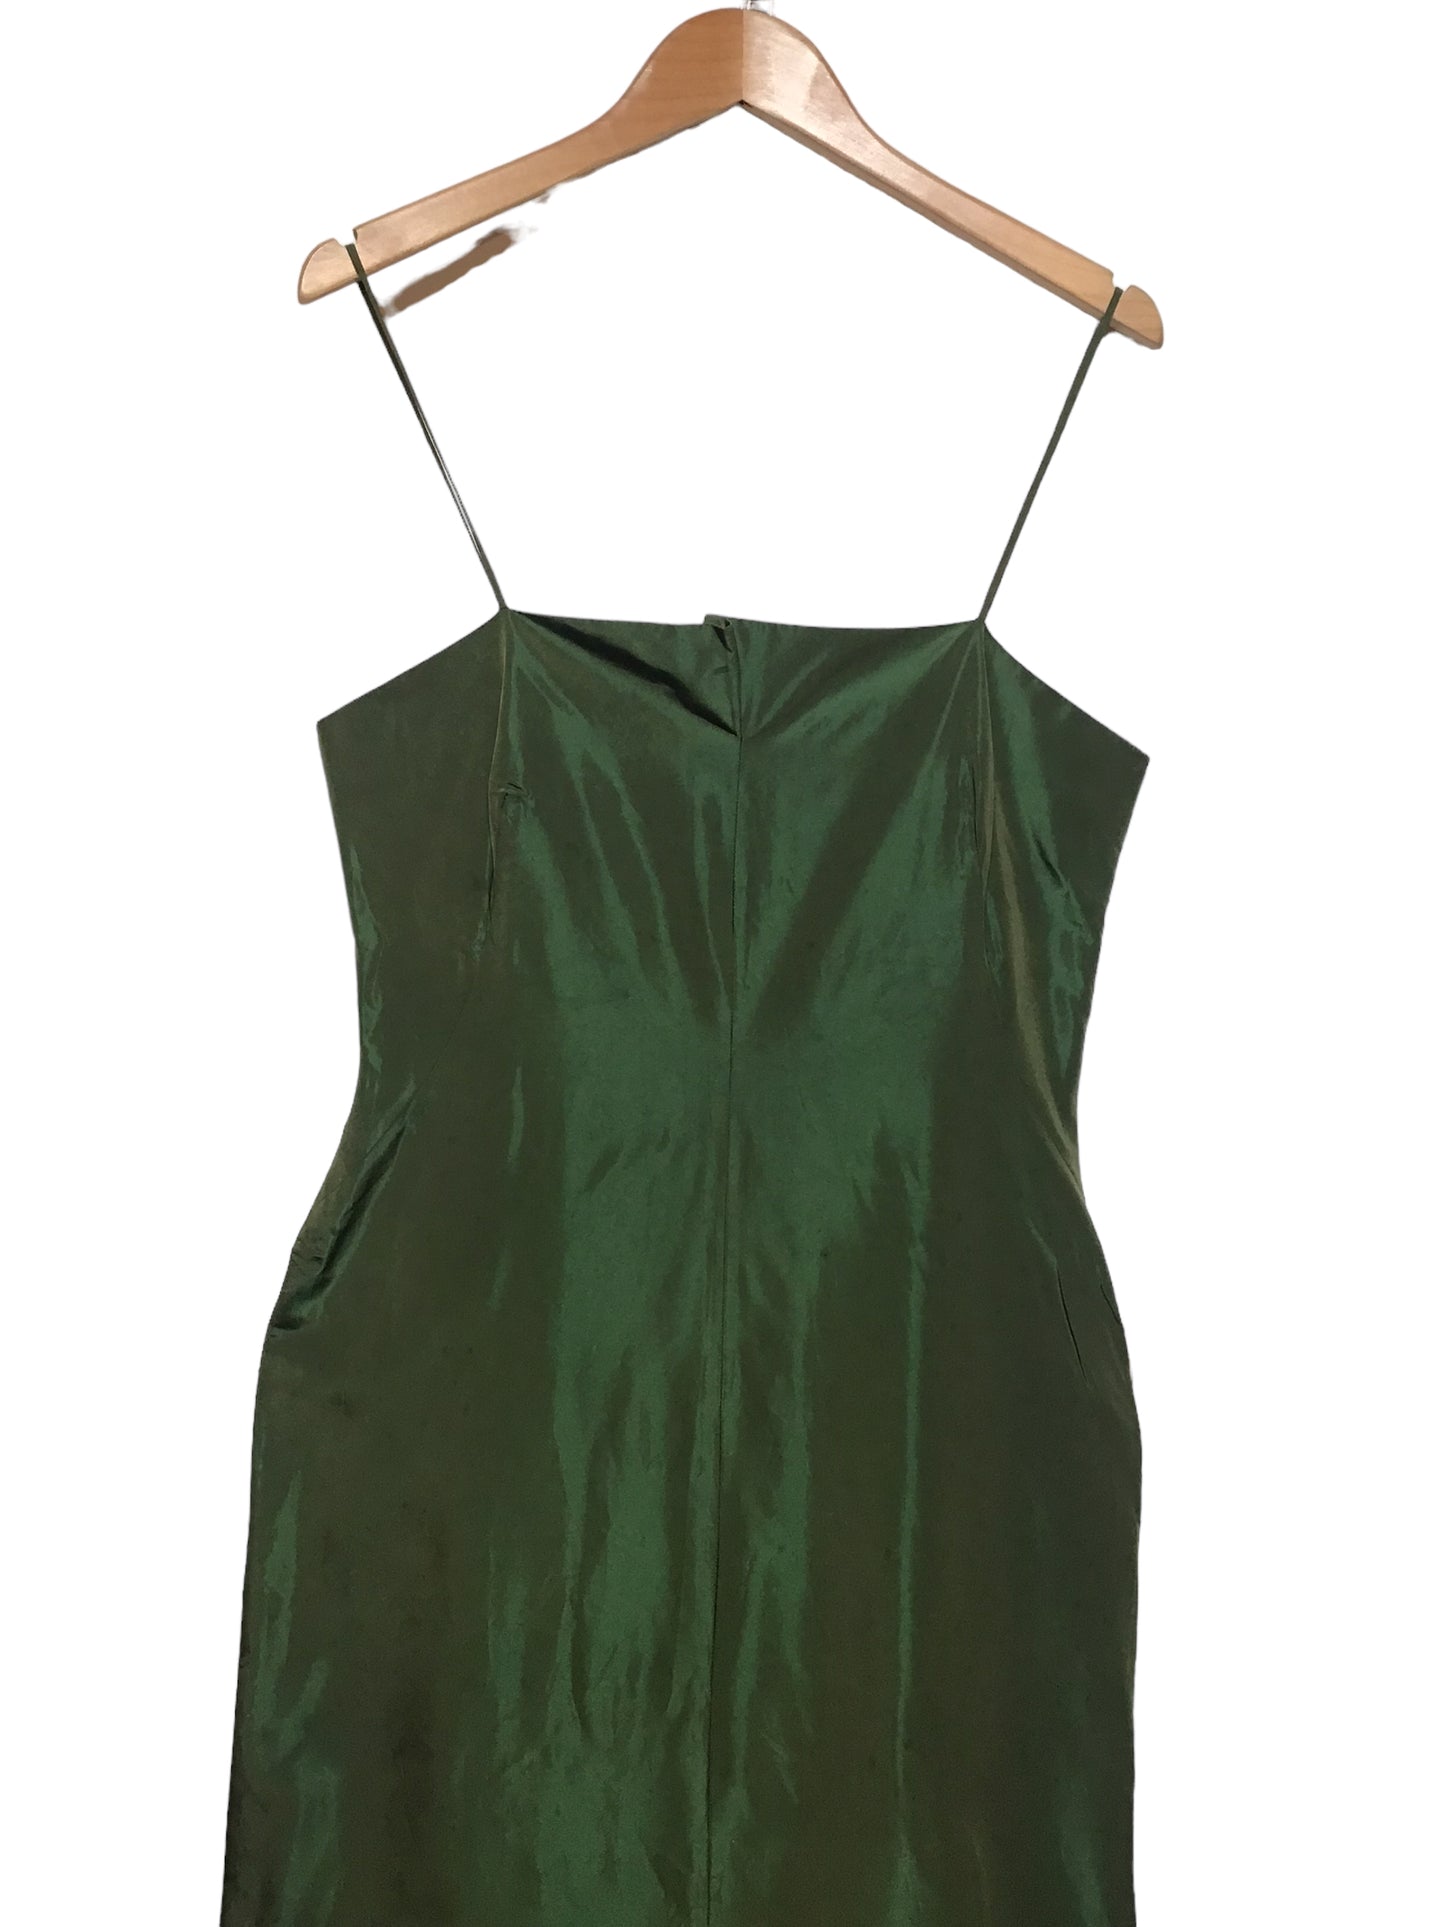 Green Metallic Dress (Size L)